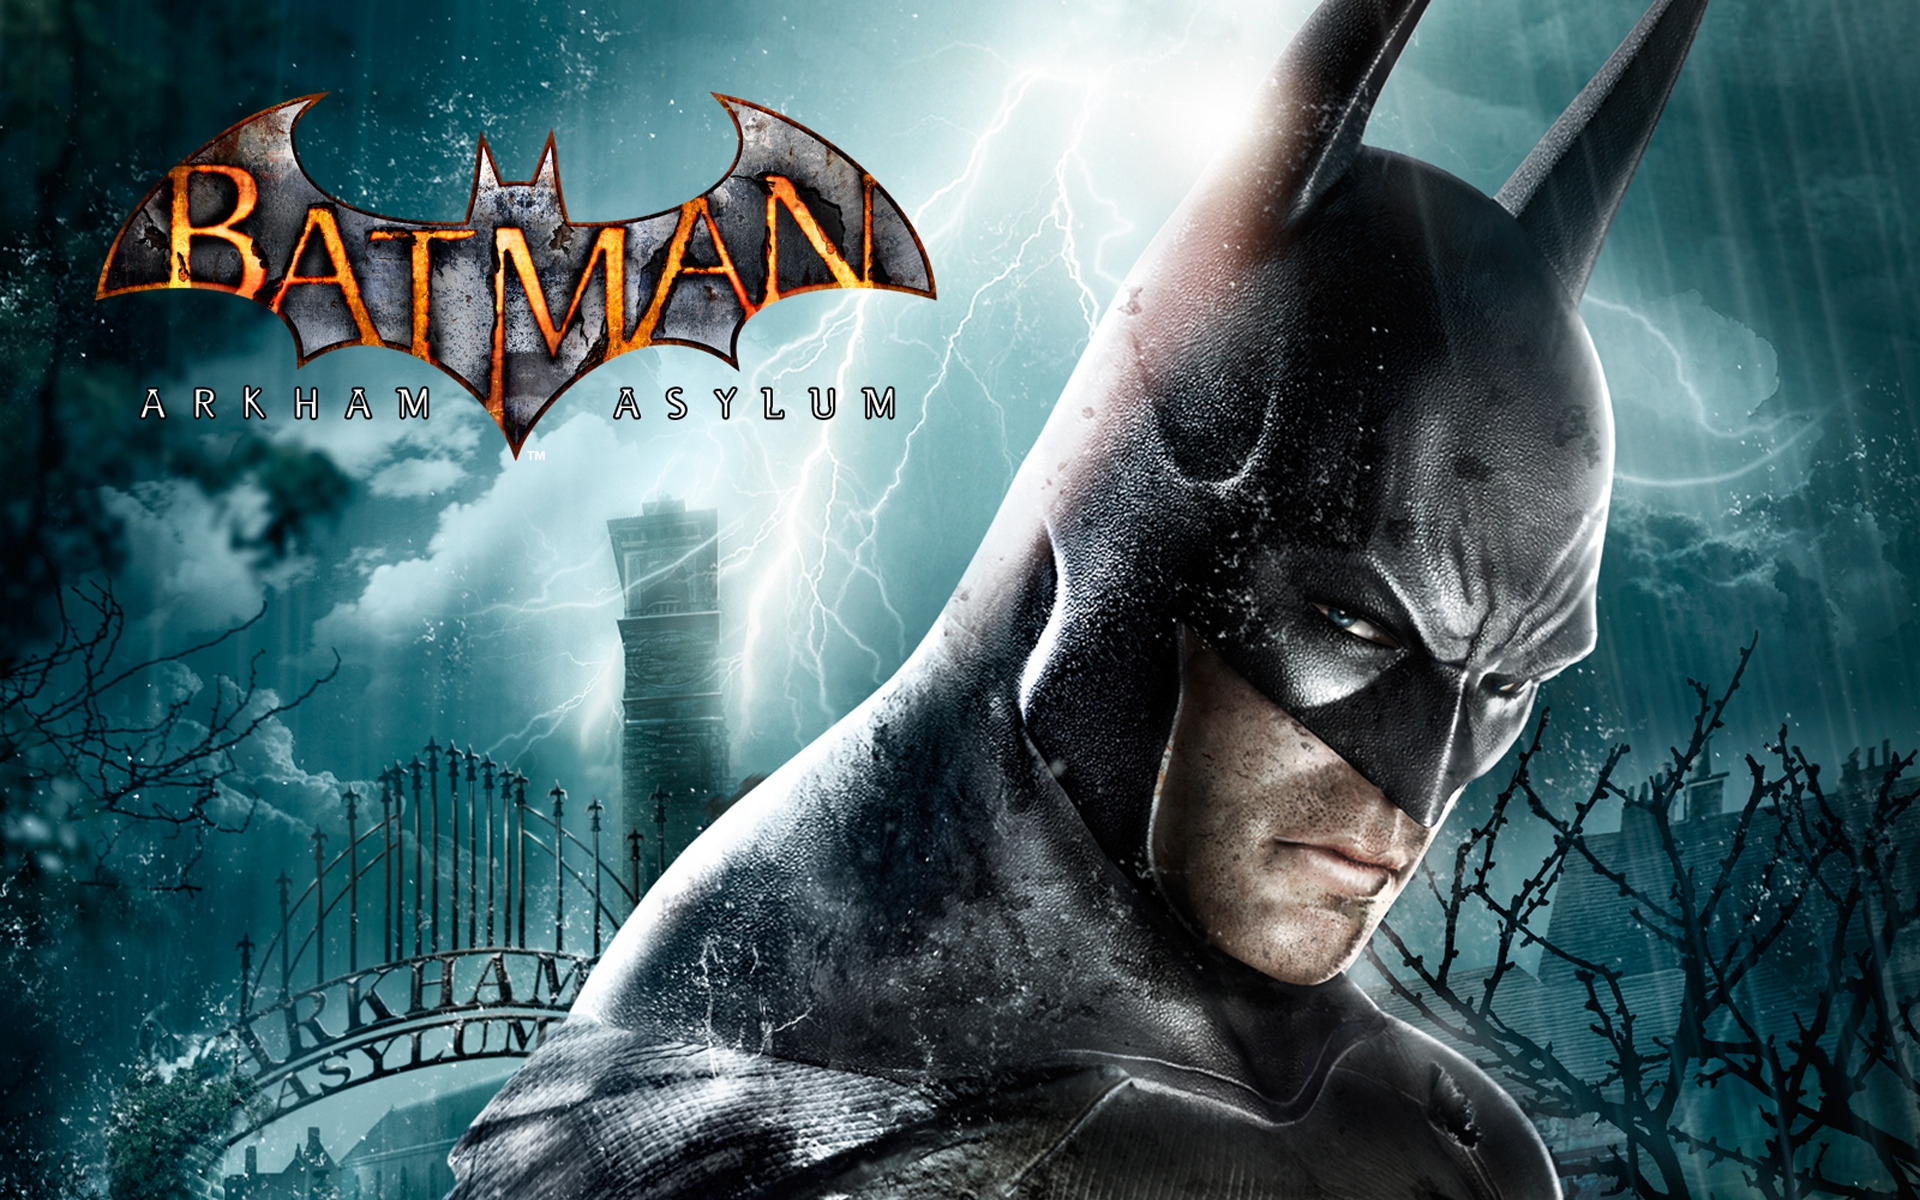 Batman Arkham Asylum for 1920 x 1200 widescreen resolution